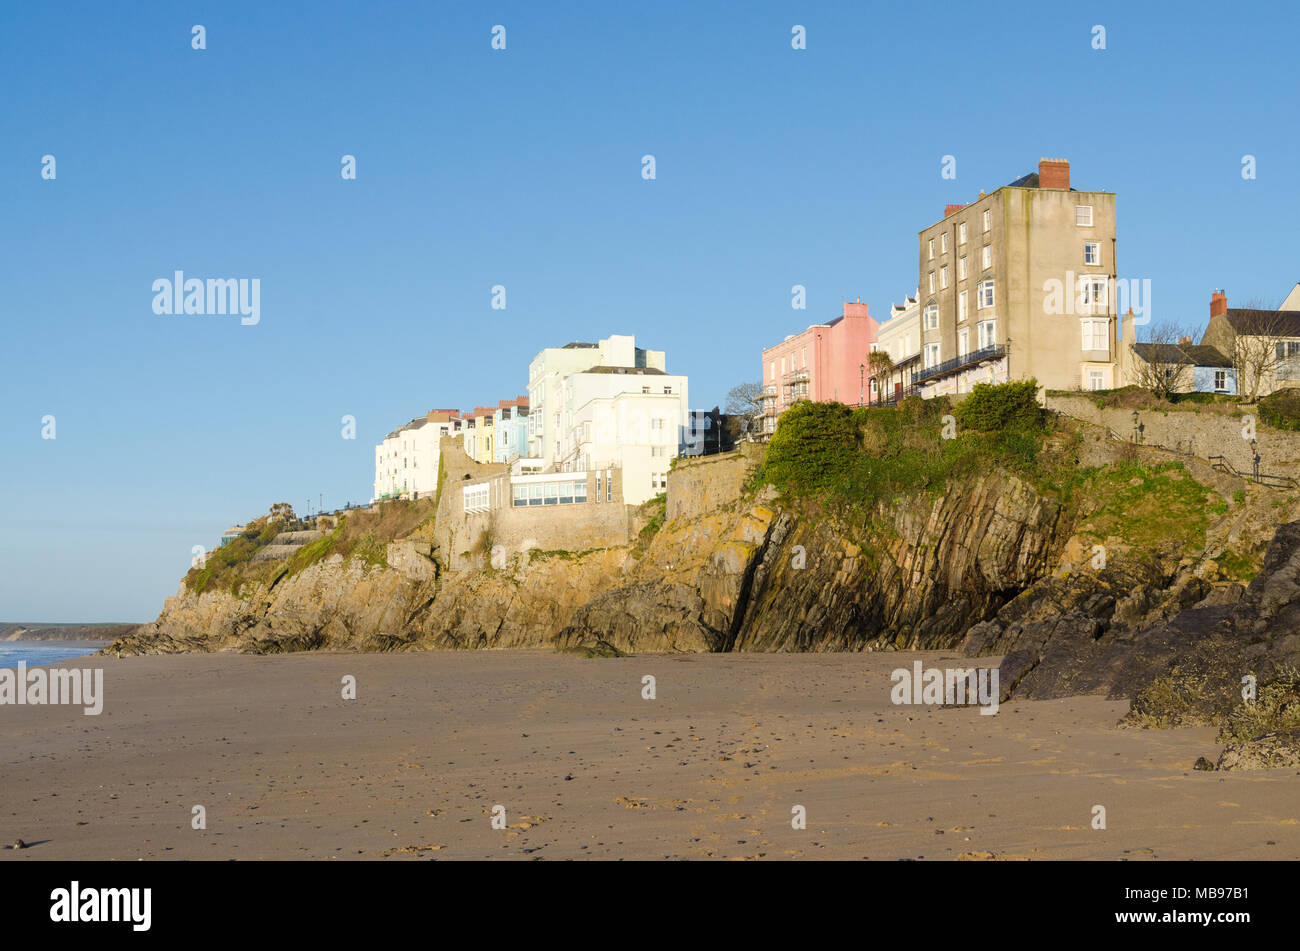 Maisons colorées donnant sur la plage de Tenby, château dans le soleil du matin Banque D'Images